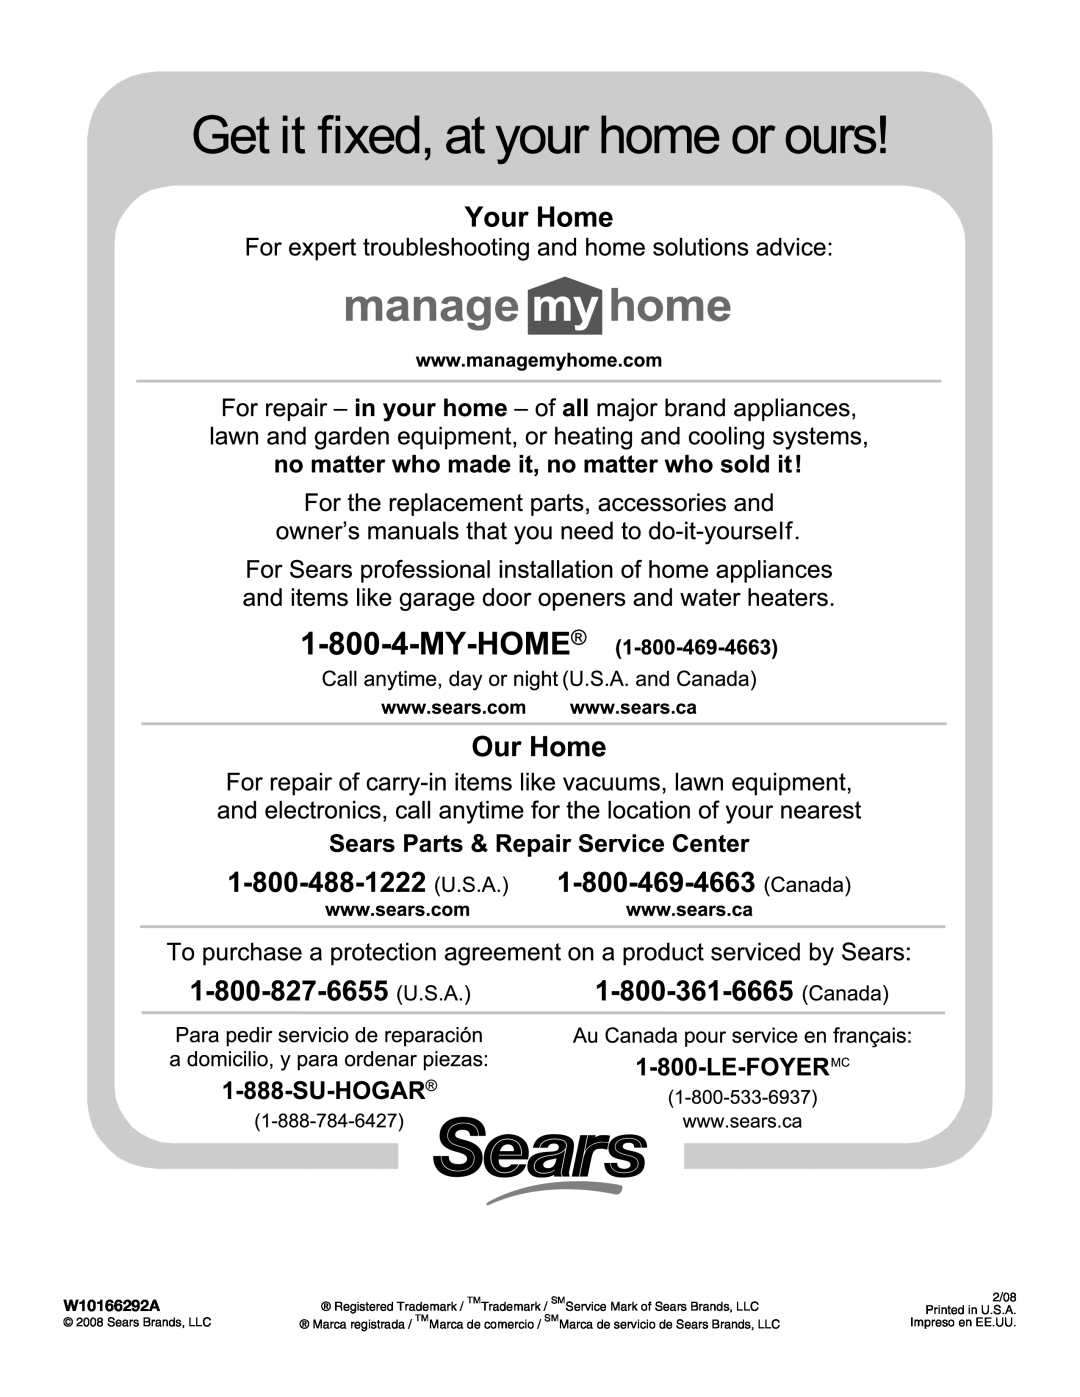 Kenmore W10166292A manual Registered Trademark, Service Mark of Sears Brands, LLC, 2/08, Printed in U.S.A, Impreso en EE.UU 